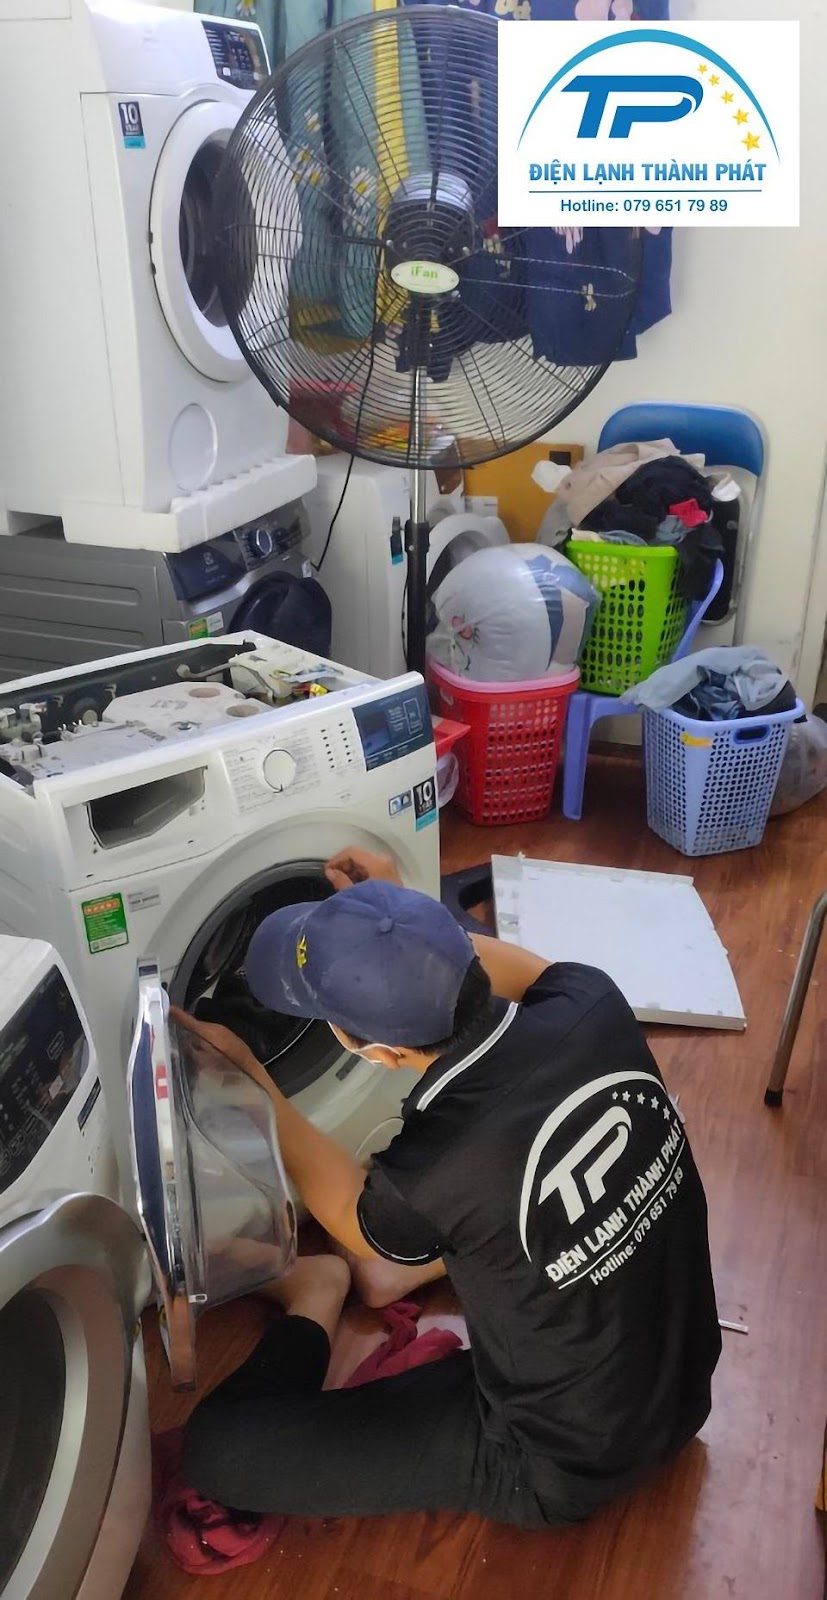 Điện lạnh Thành Phát nhận sửa chữa tất các dòng máy giặt có mặt trên thị trường.